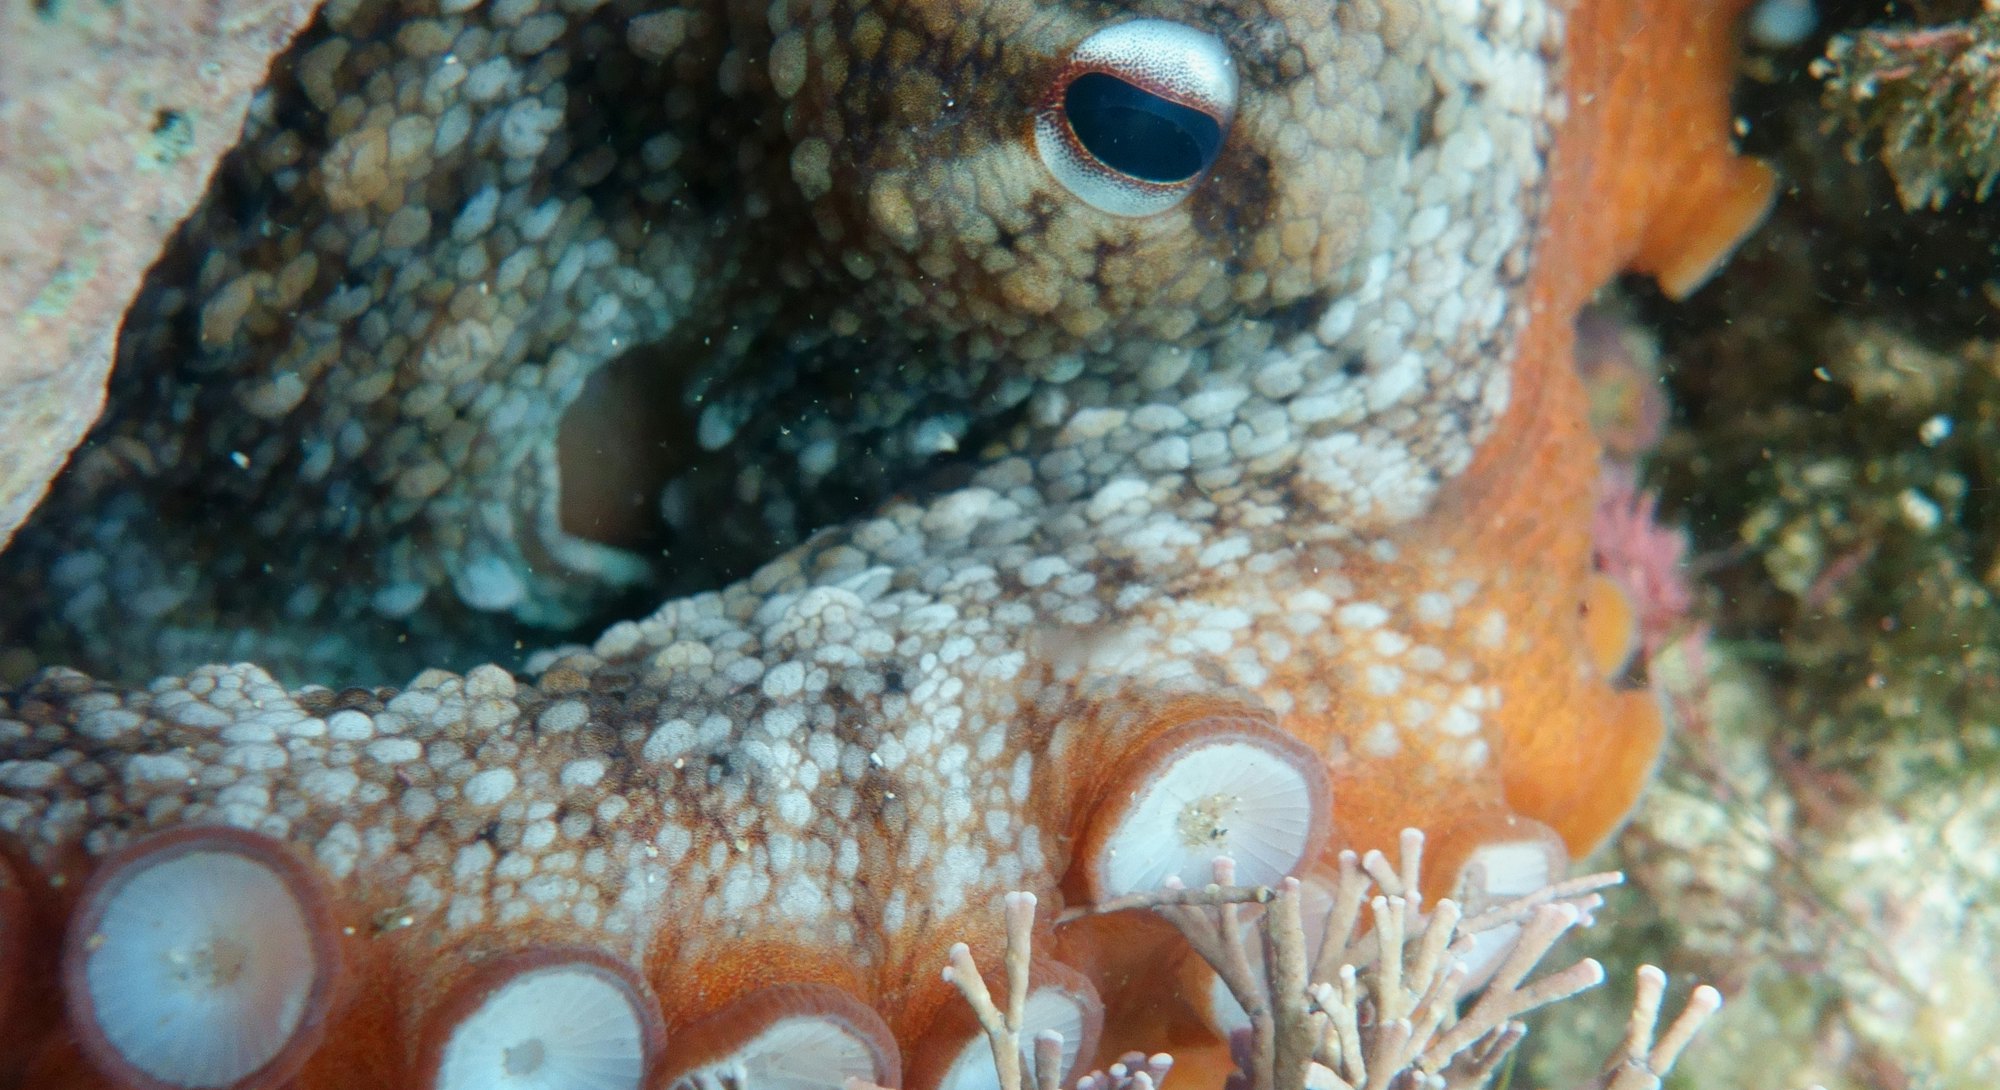 Gloomy Octopus, Octopus tetricus, Common Sydney Octopus in Sydney